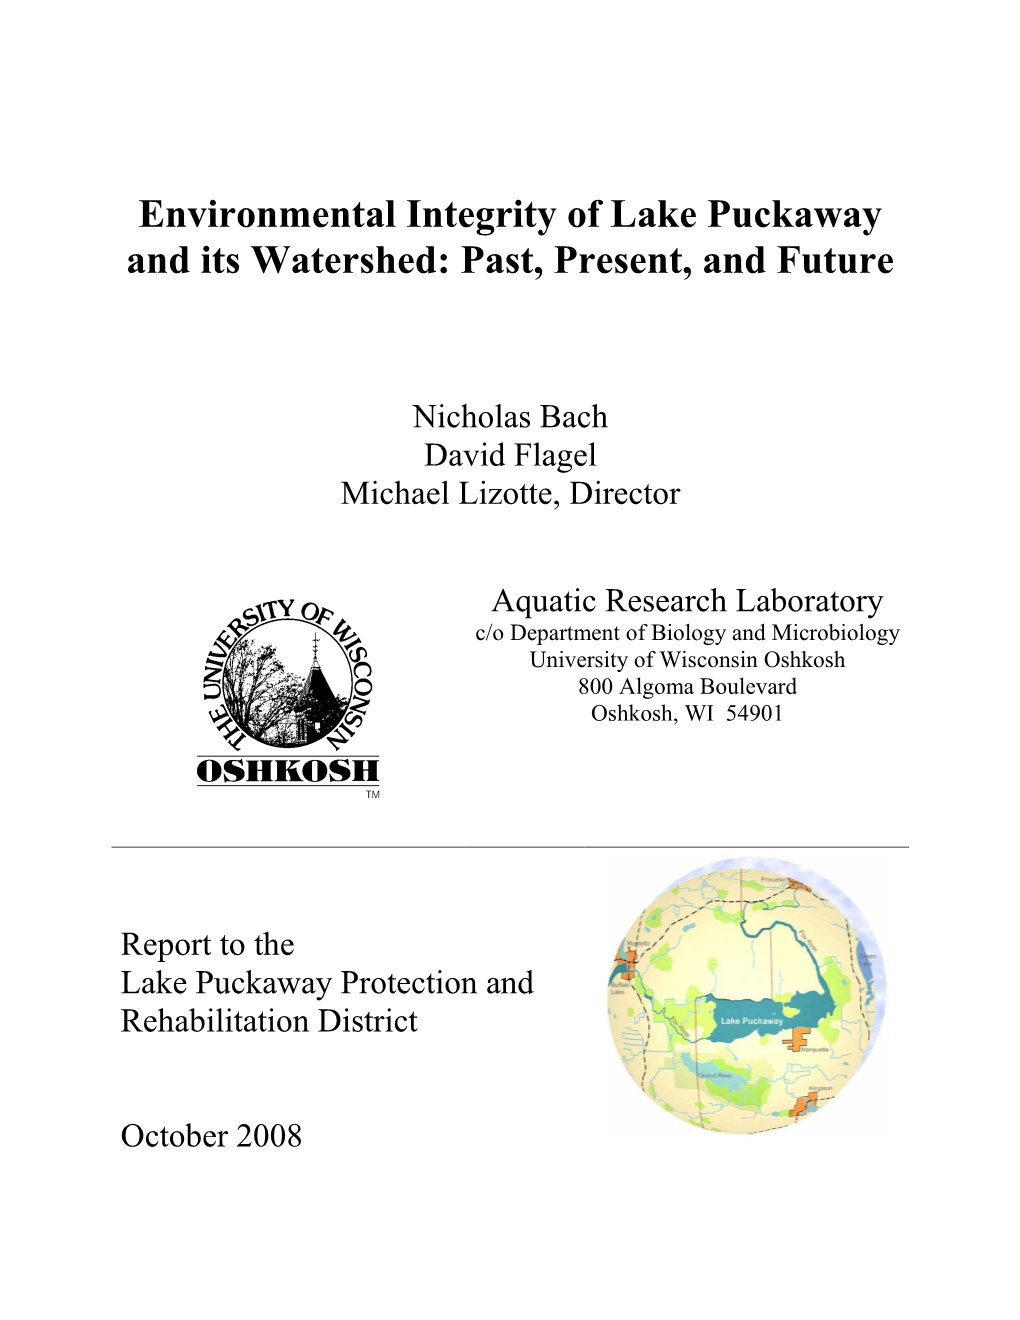 Lake Puckaway Environmental Integrity Report 2008